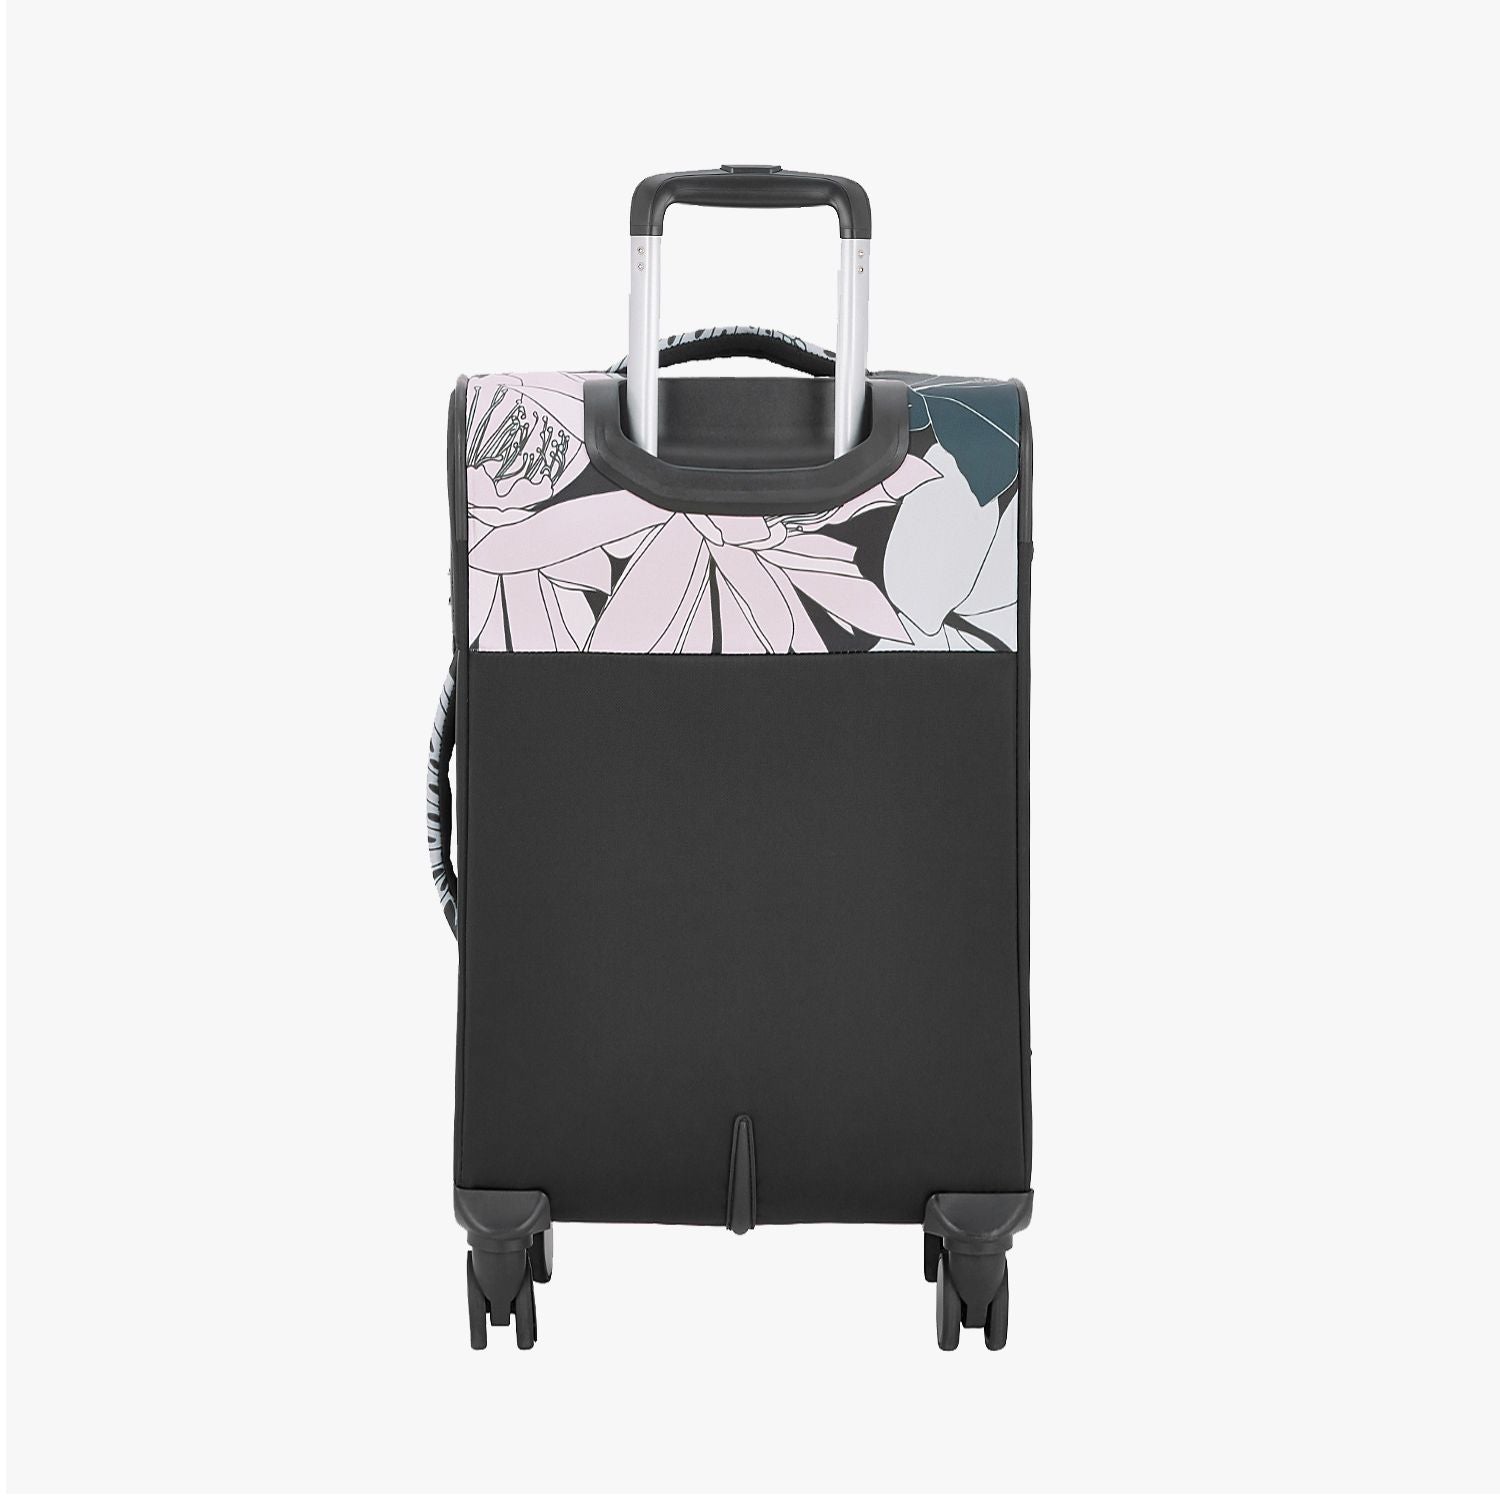 Bahamas Soft Luggage- Black